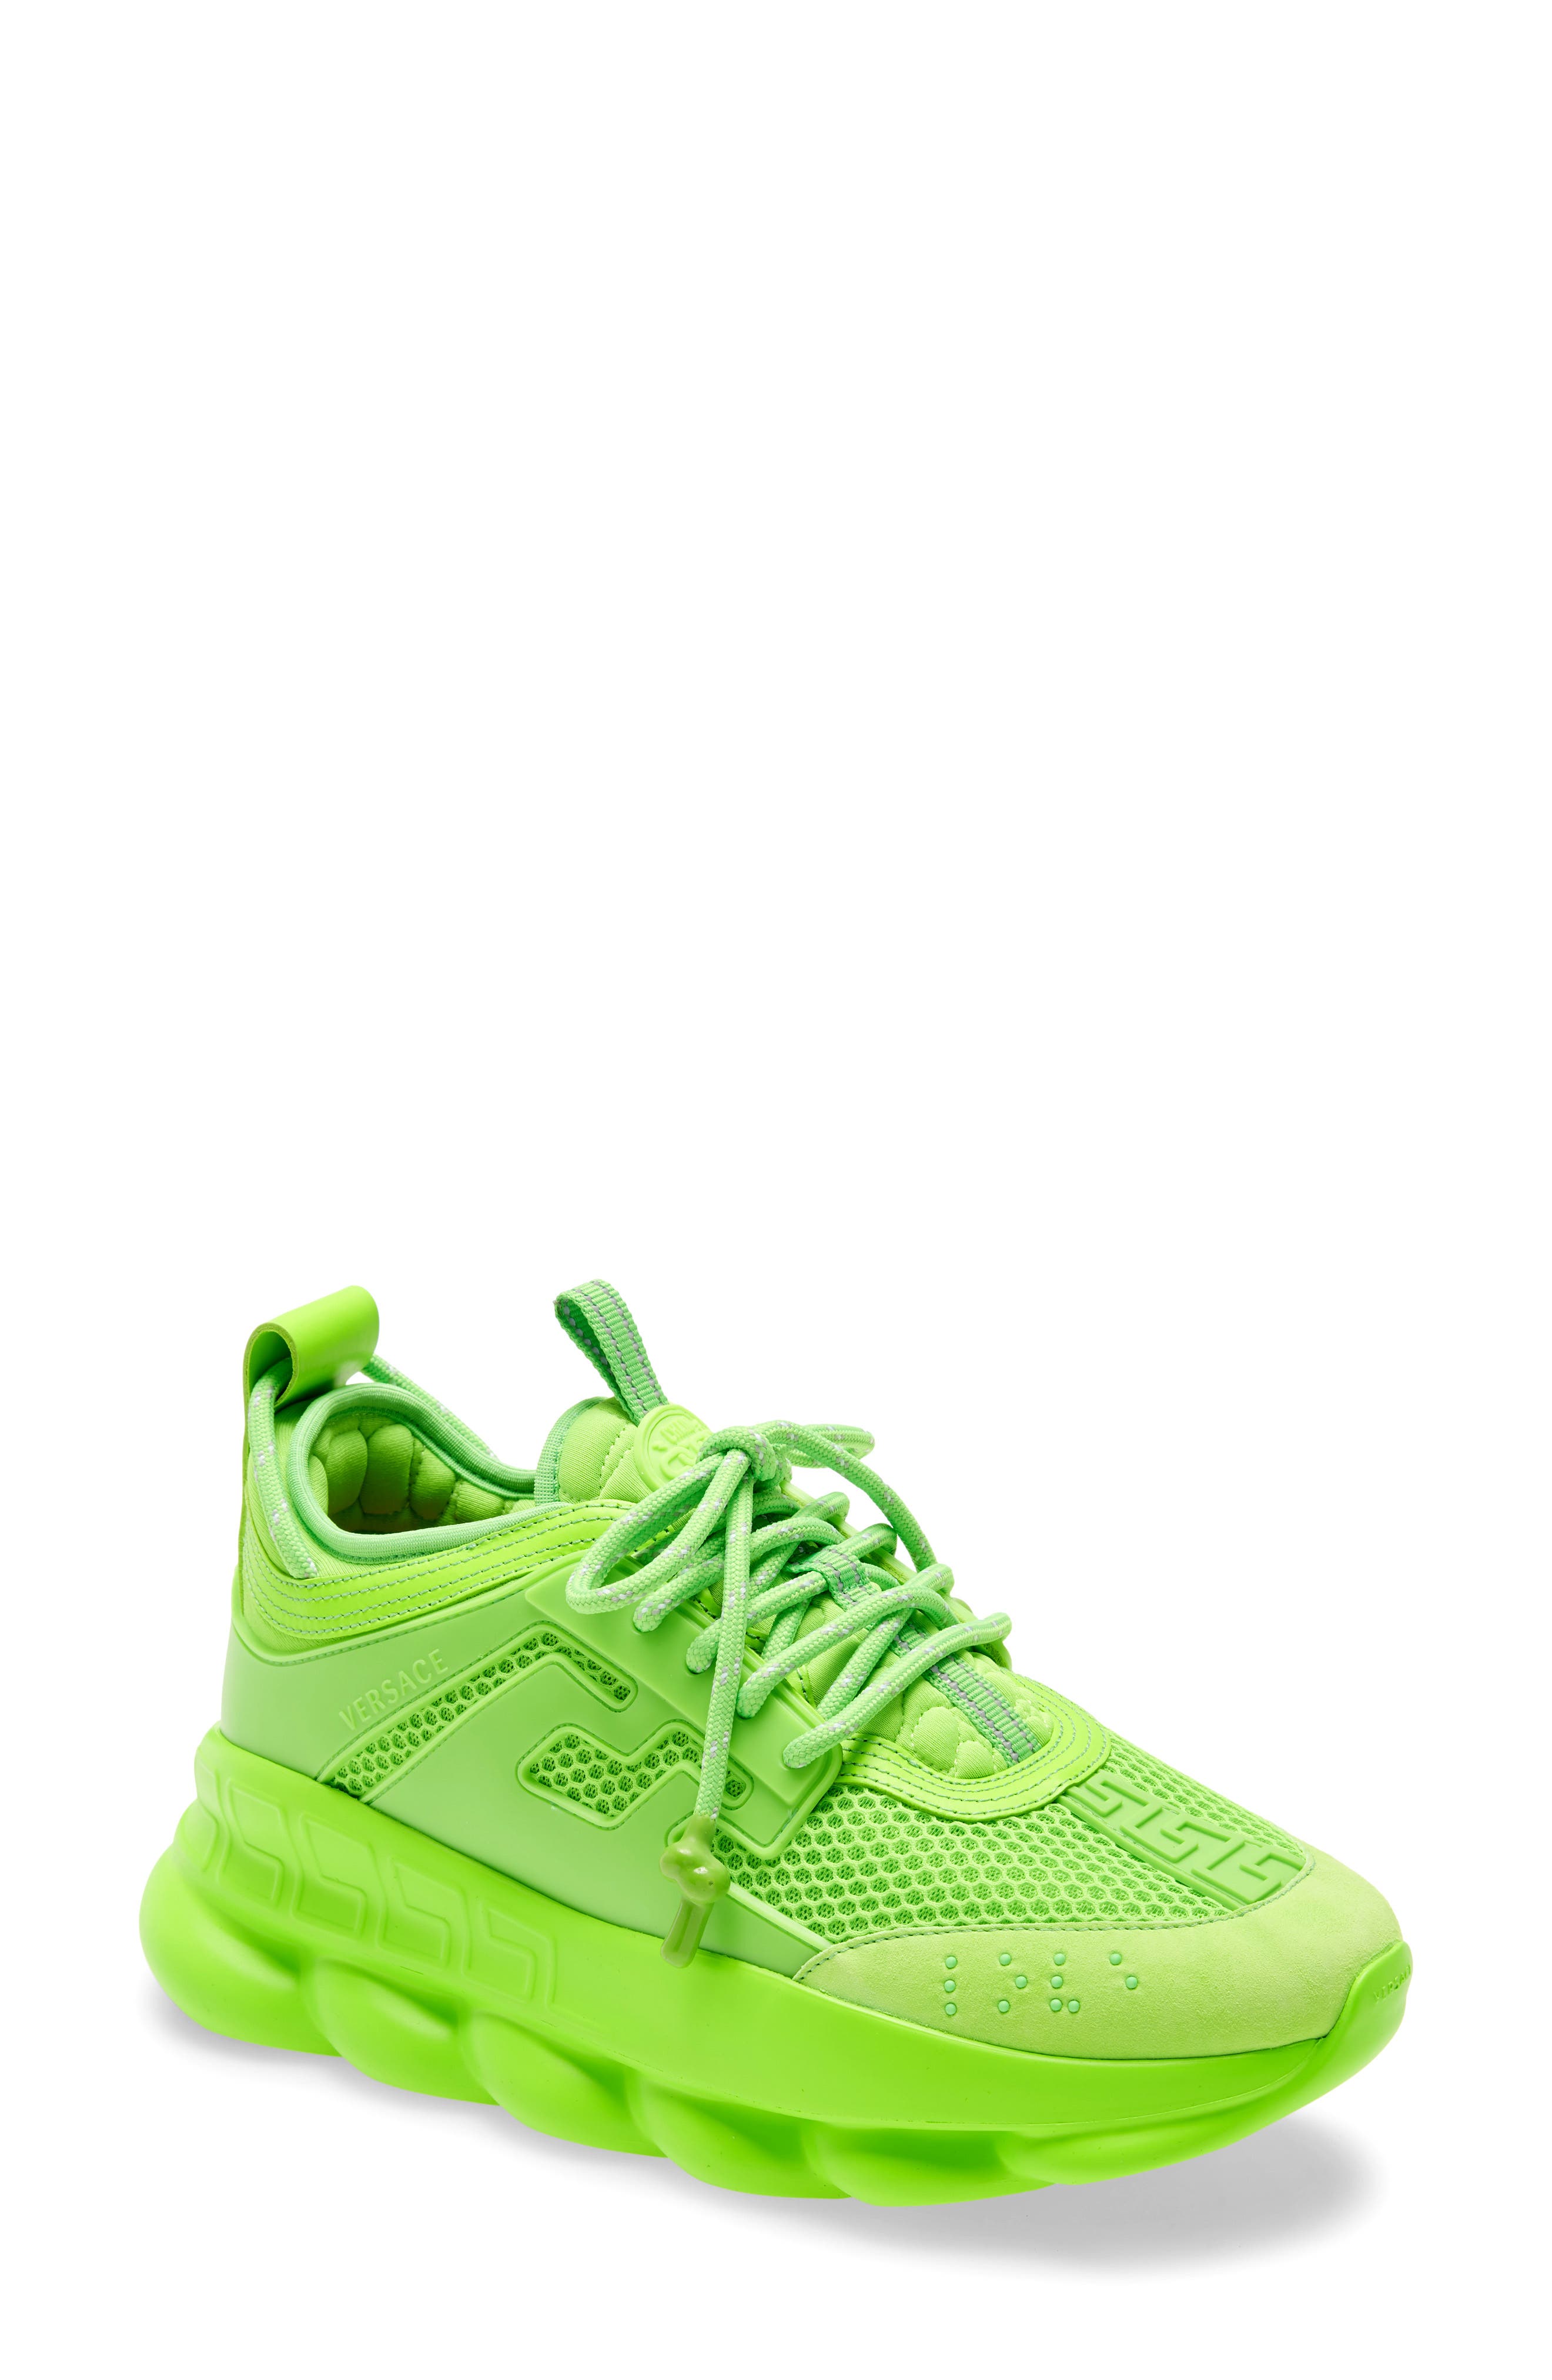 versace neon sneakers